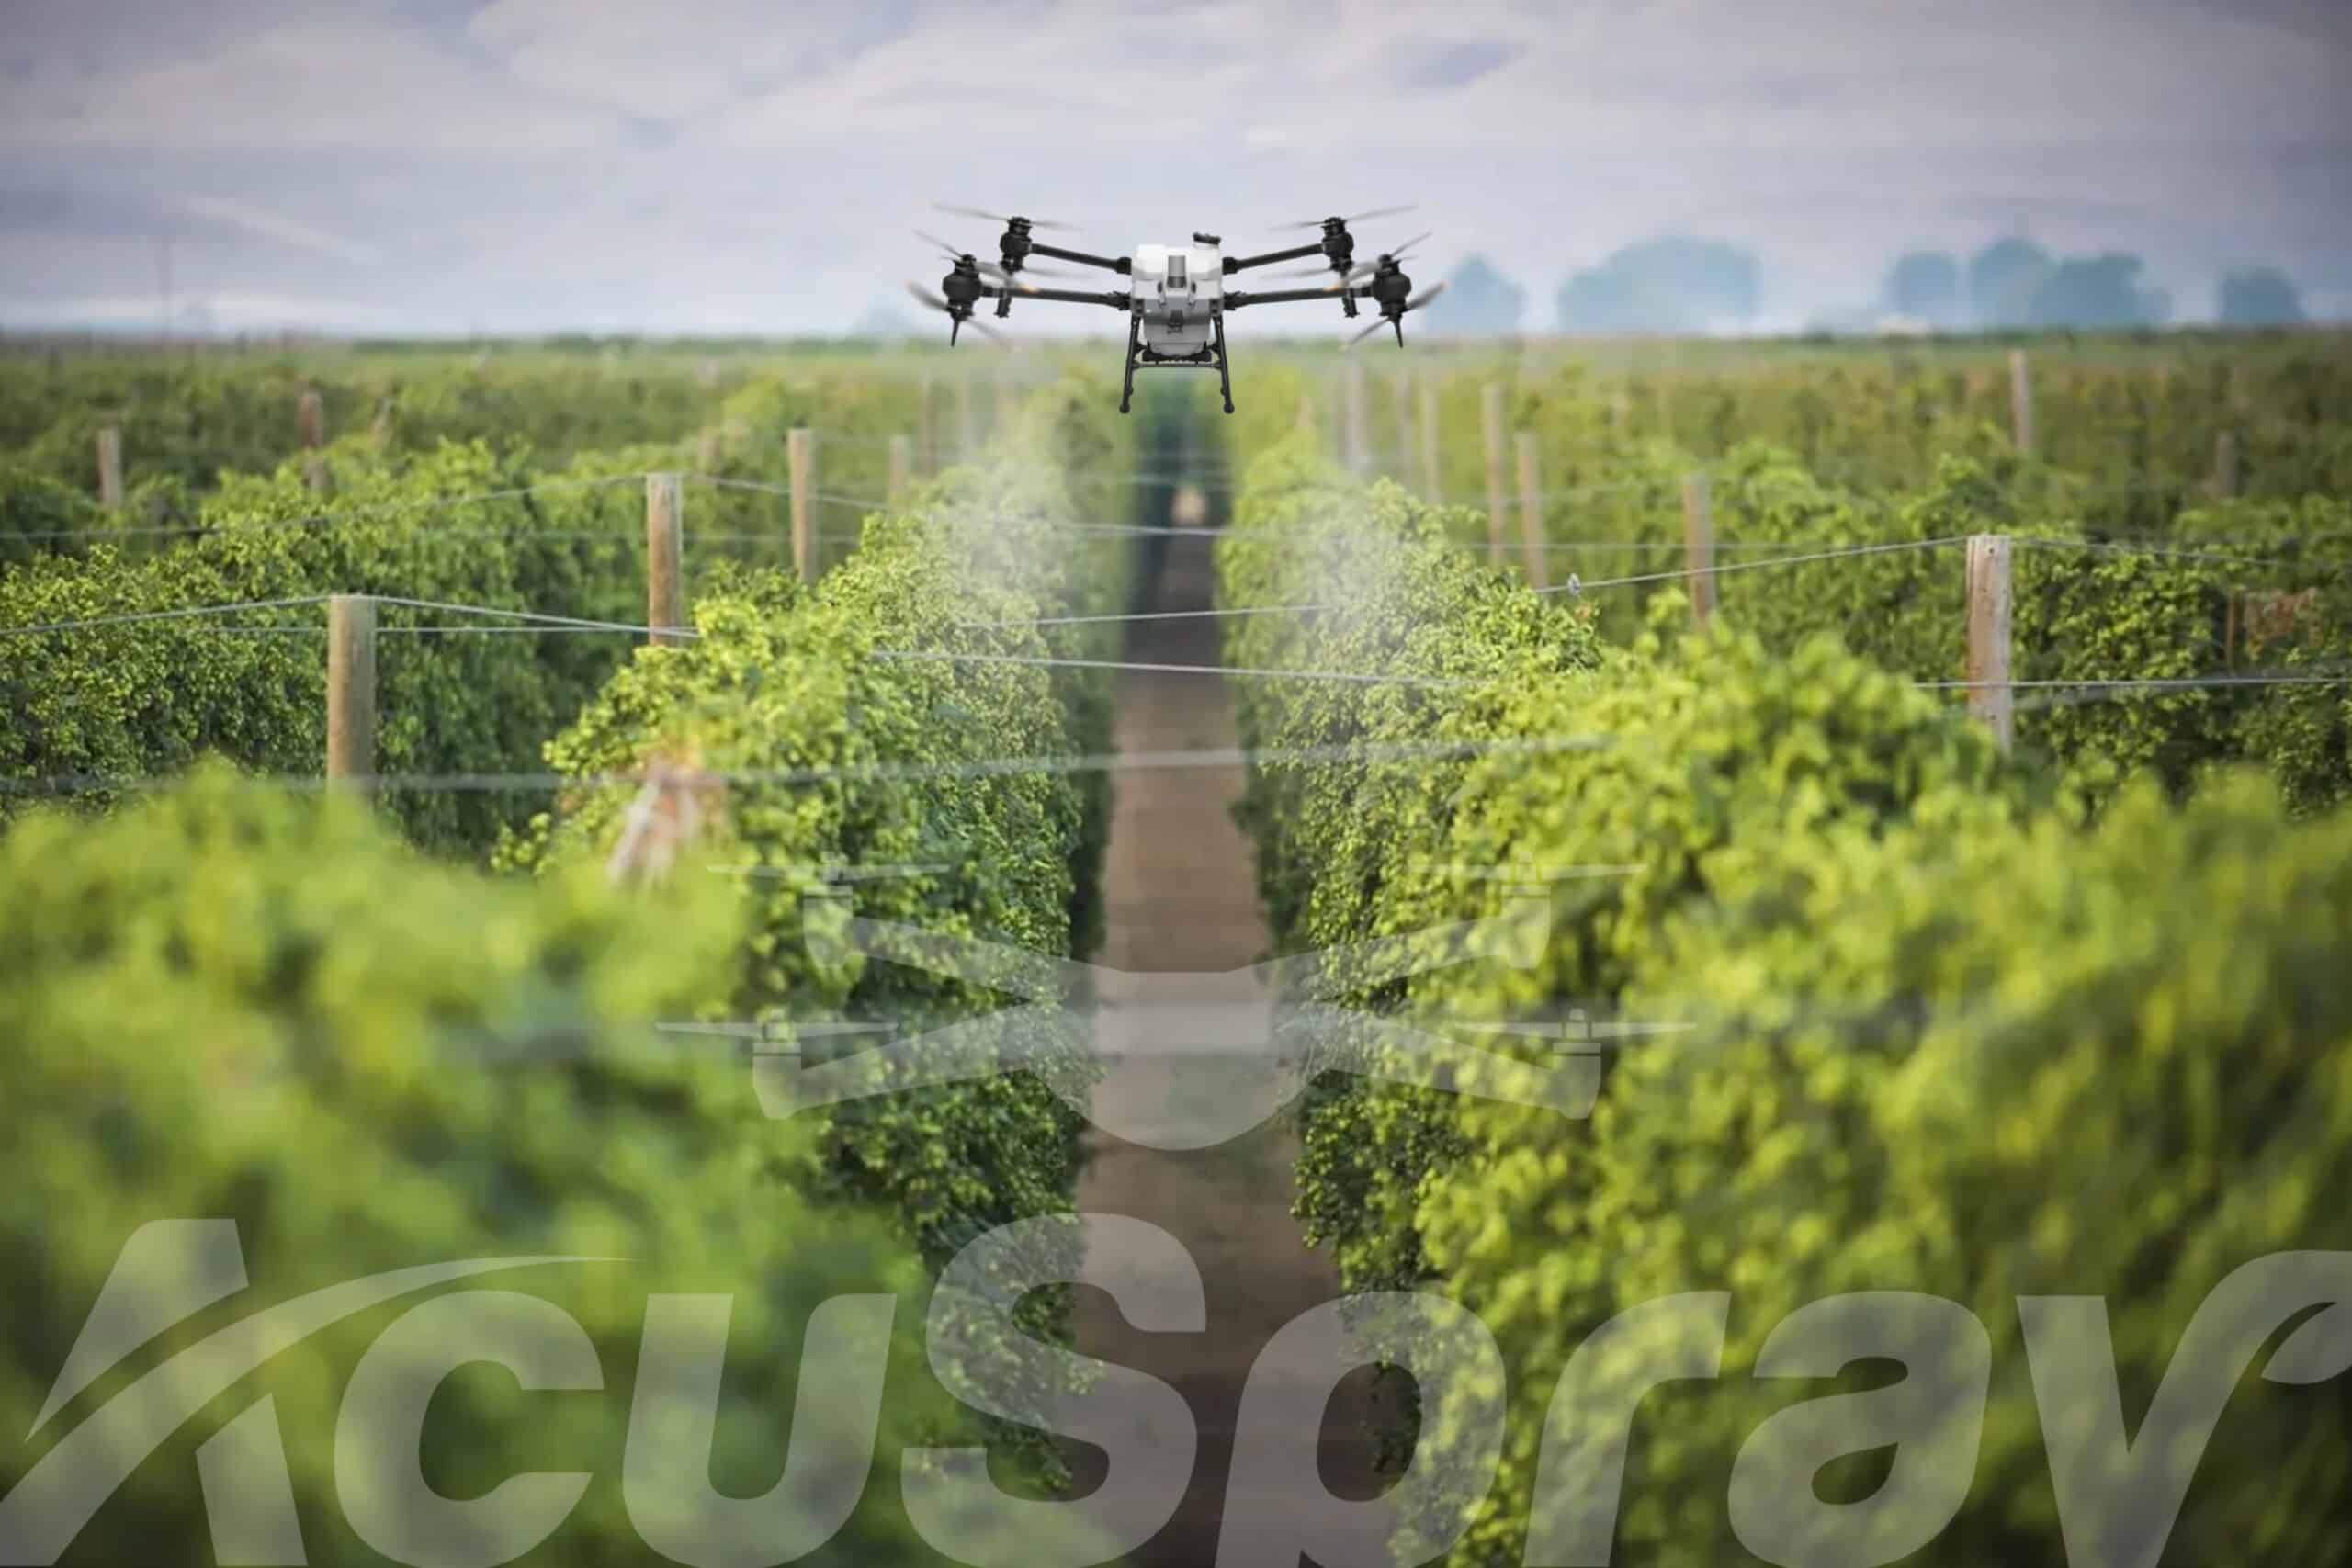 An AcuSpray drone precision spraying over a vibrant hops farm.